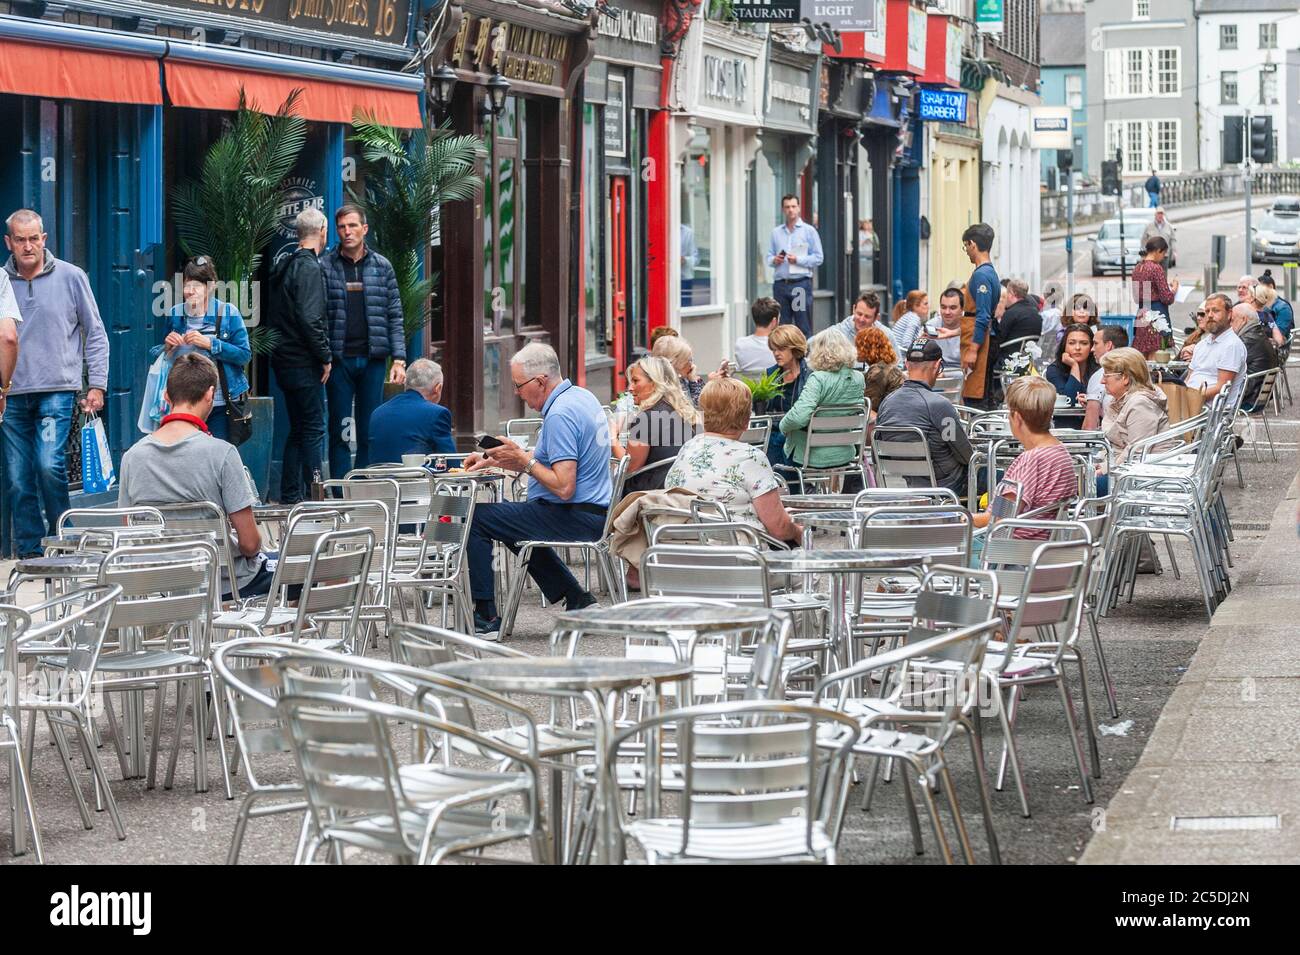 Cork, Irlanda. 2 de julio de 2020. Princes Street en la ciudad de Cork ha sido peatonal para fomentar la alimentación al aire libre como parte de los restaurantes reabriendo después de su cierre debido a Covid-19. Crédito: Agnews/Alamy Live News Foto de stock